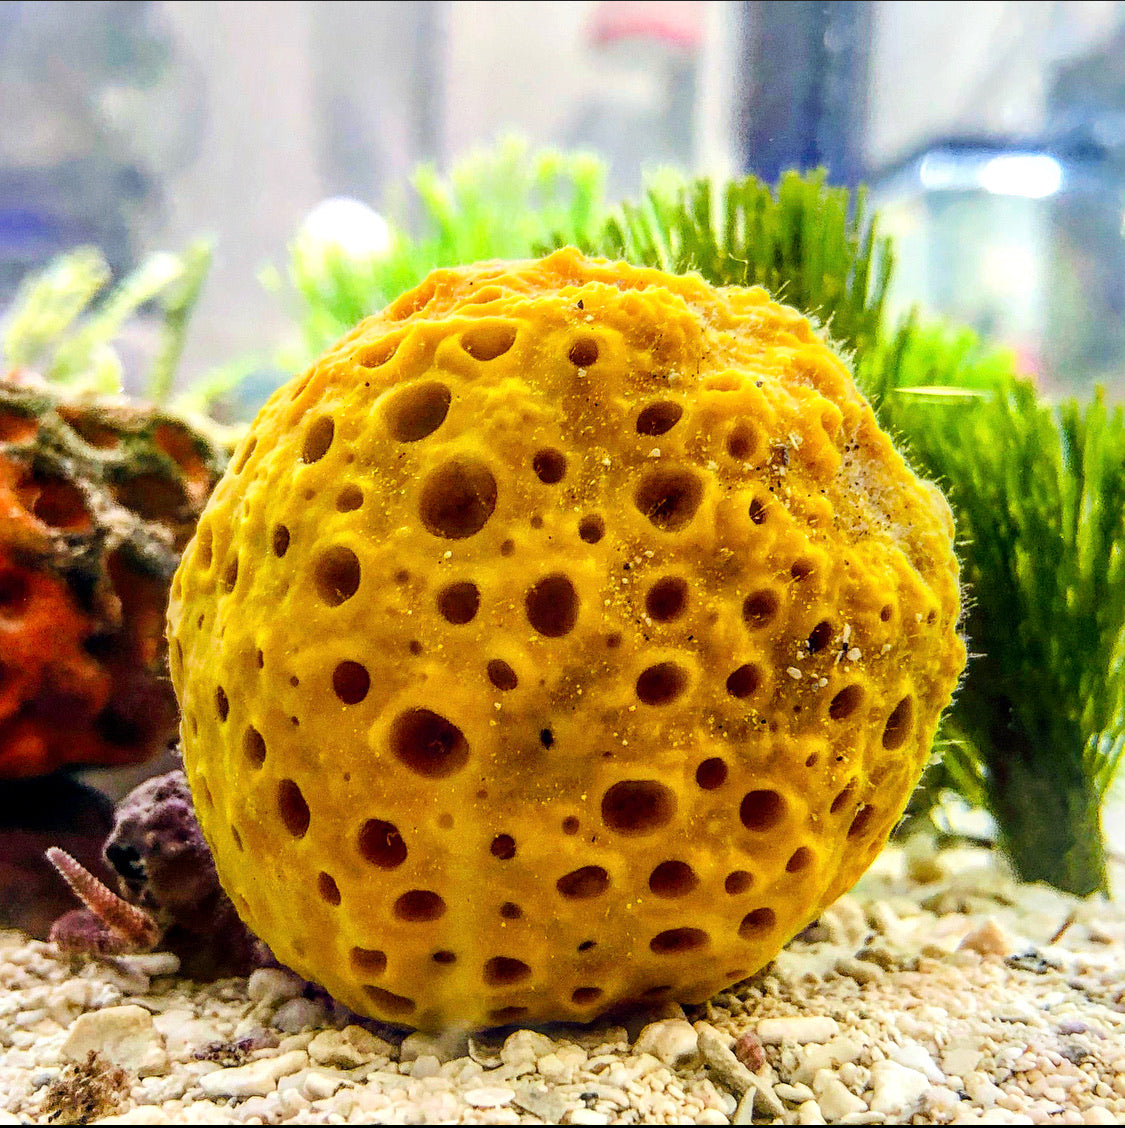 Sea Sponge